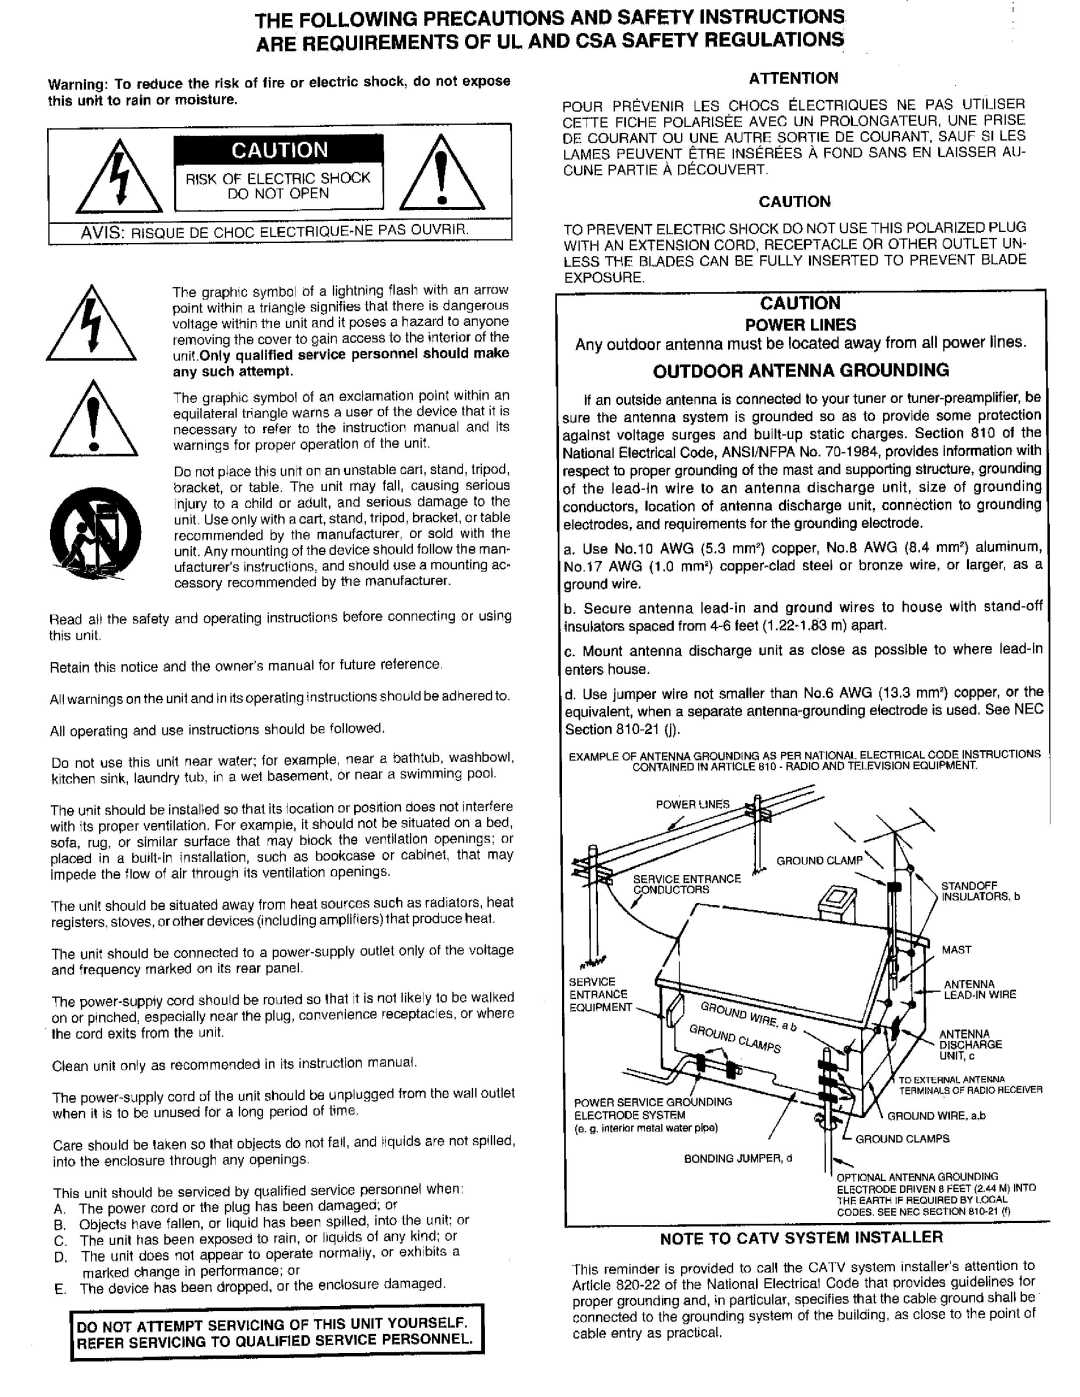 Adcom GCA-510 manual 